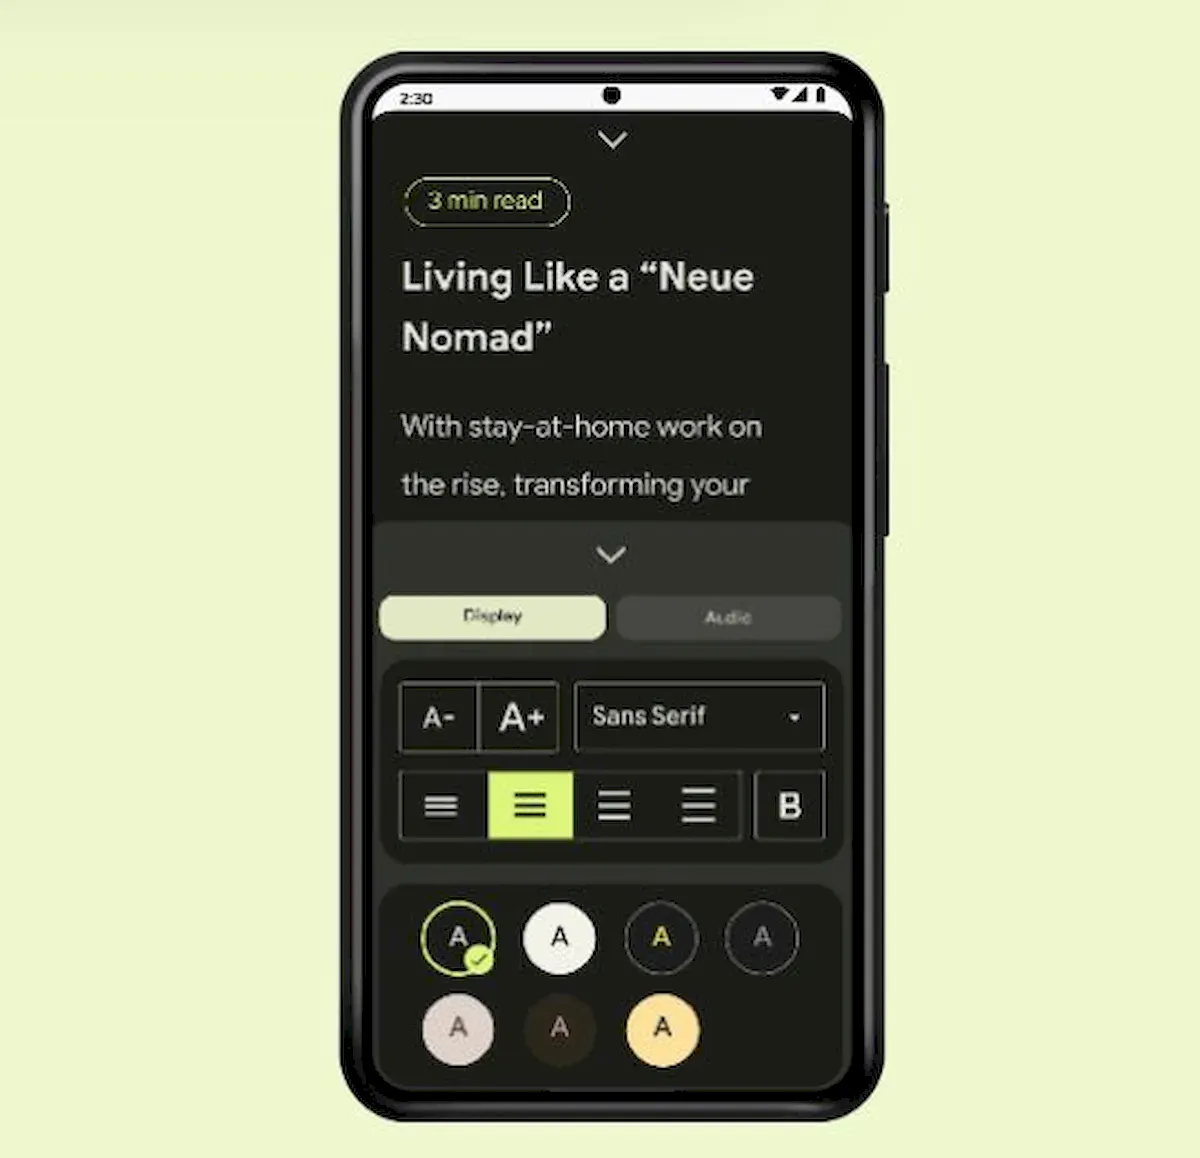 App torna o Android mais acessível para usuários cegos, com baixa visão e disléxicos